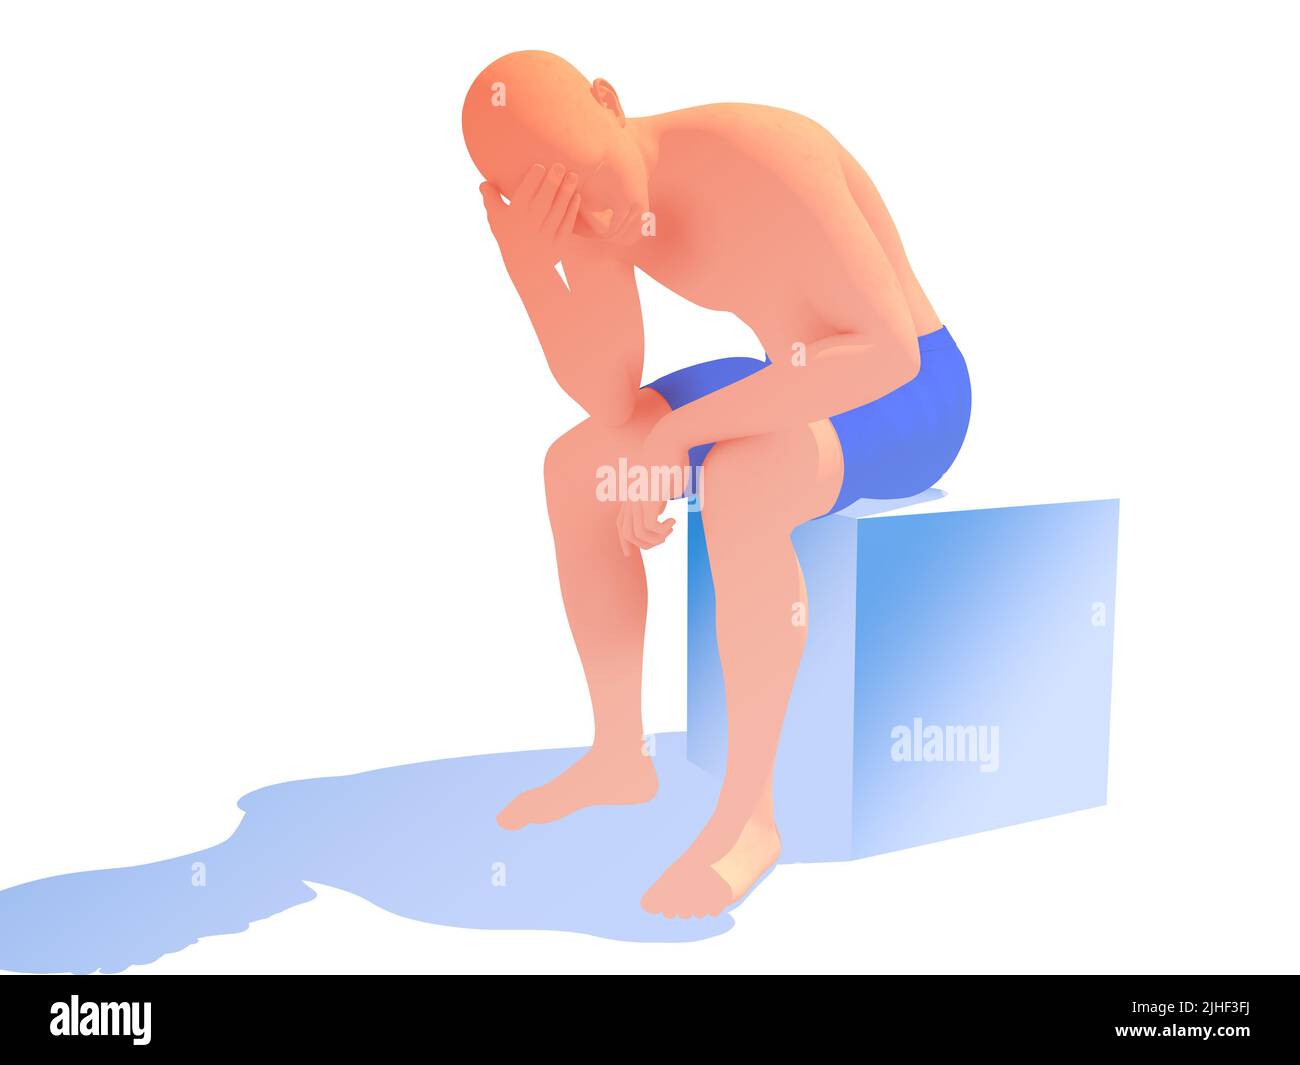 3d illustrazione della silhouette umana con depressione, dolore, malattia mentale. Ritagliato su sfondo bianco con colori naturali. Foto Stock